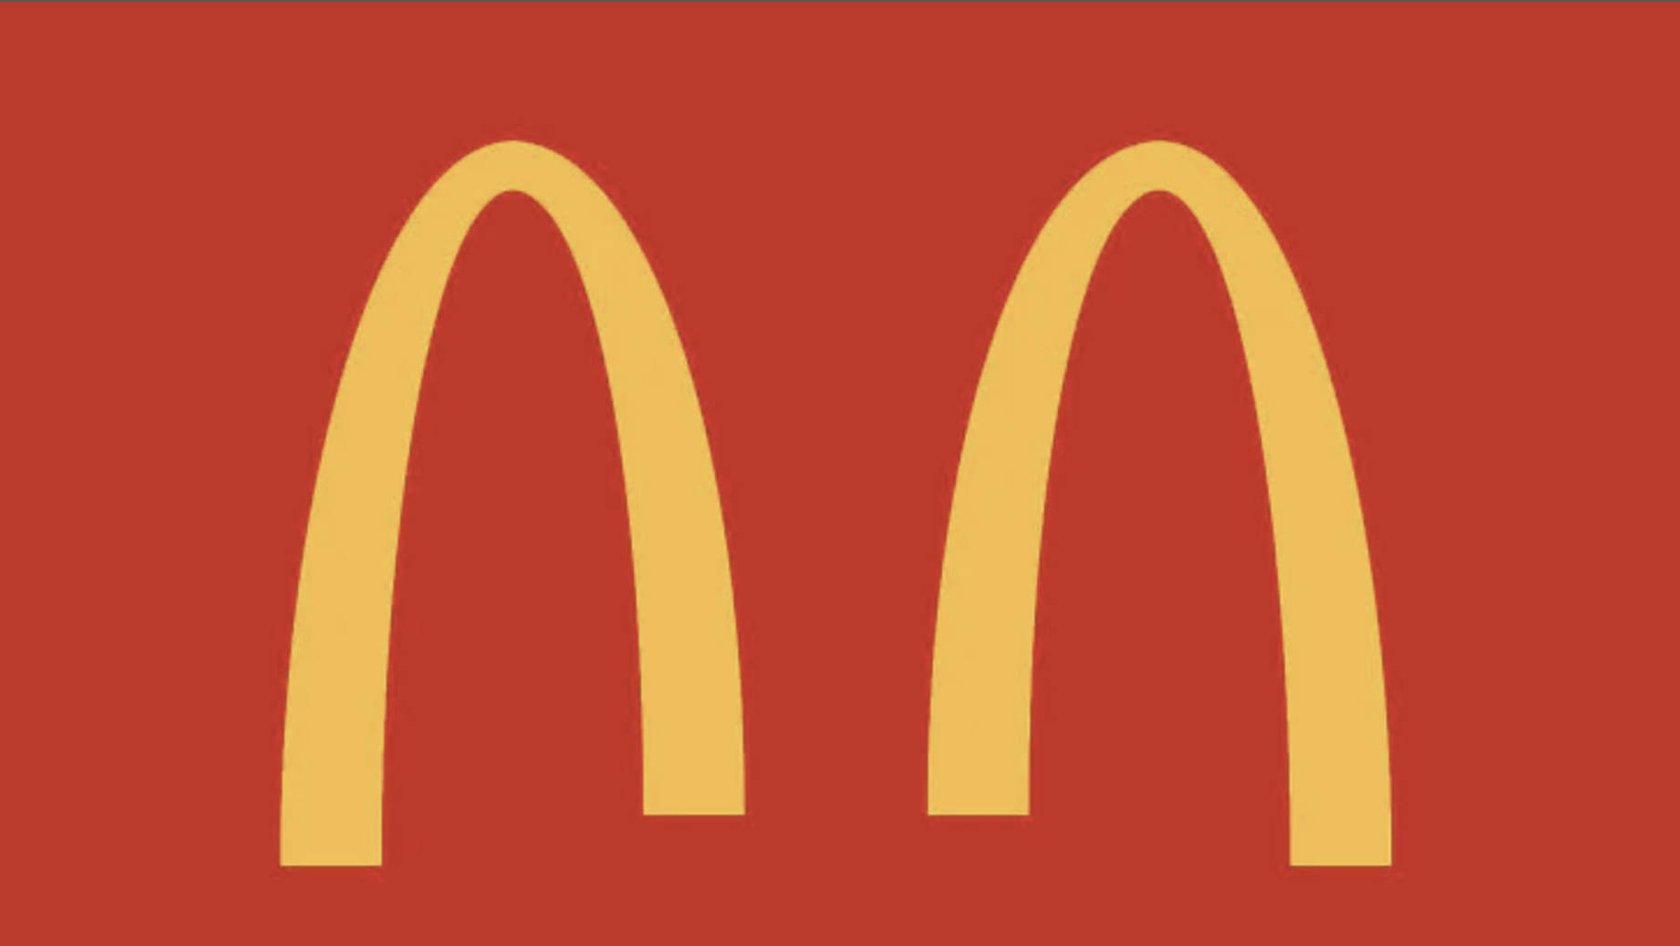 Socially distanced McDonald's logo